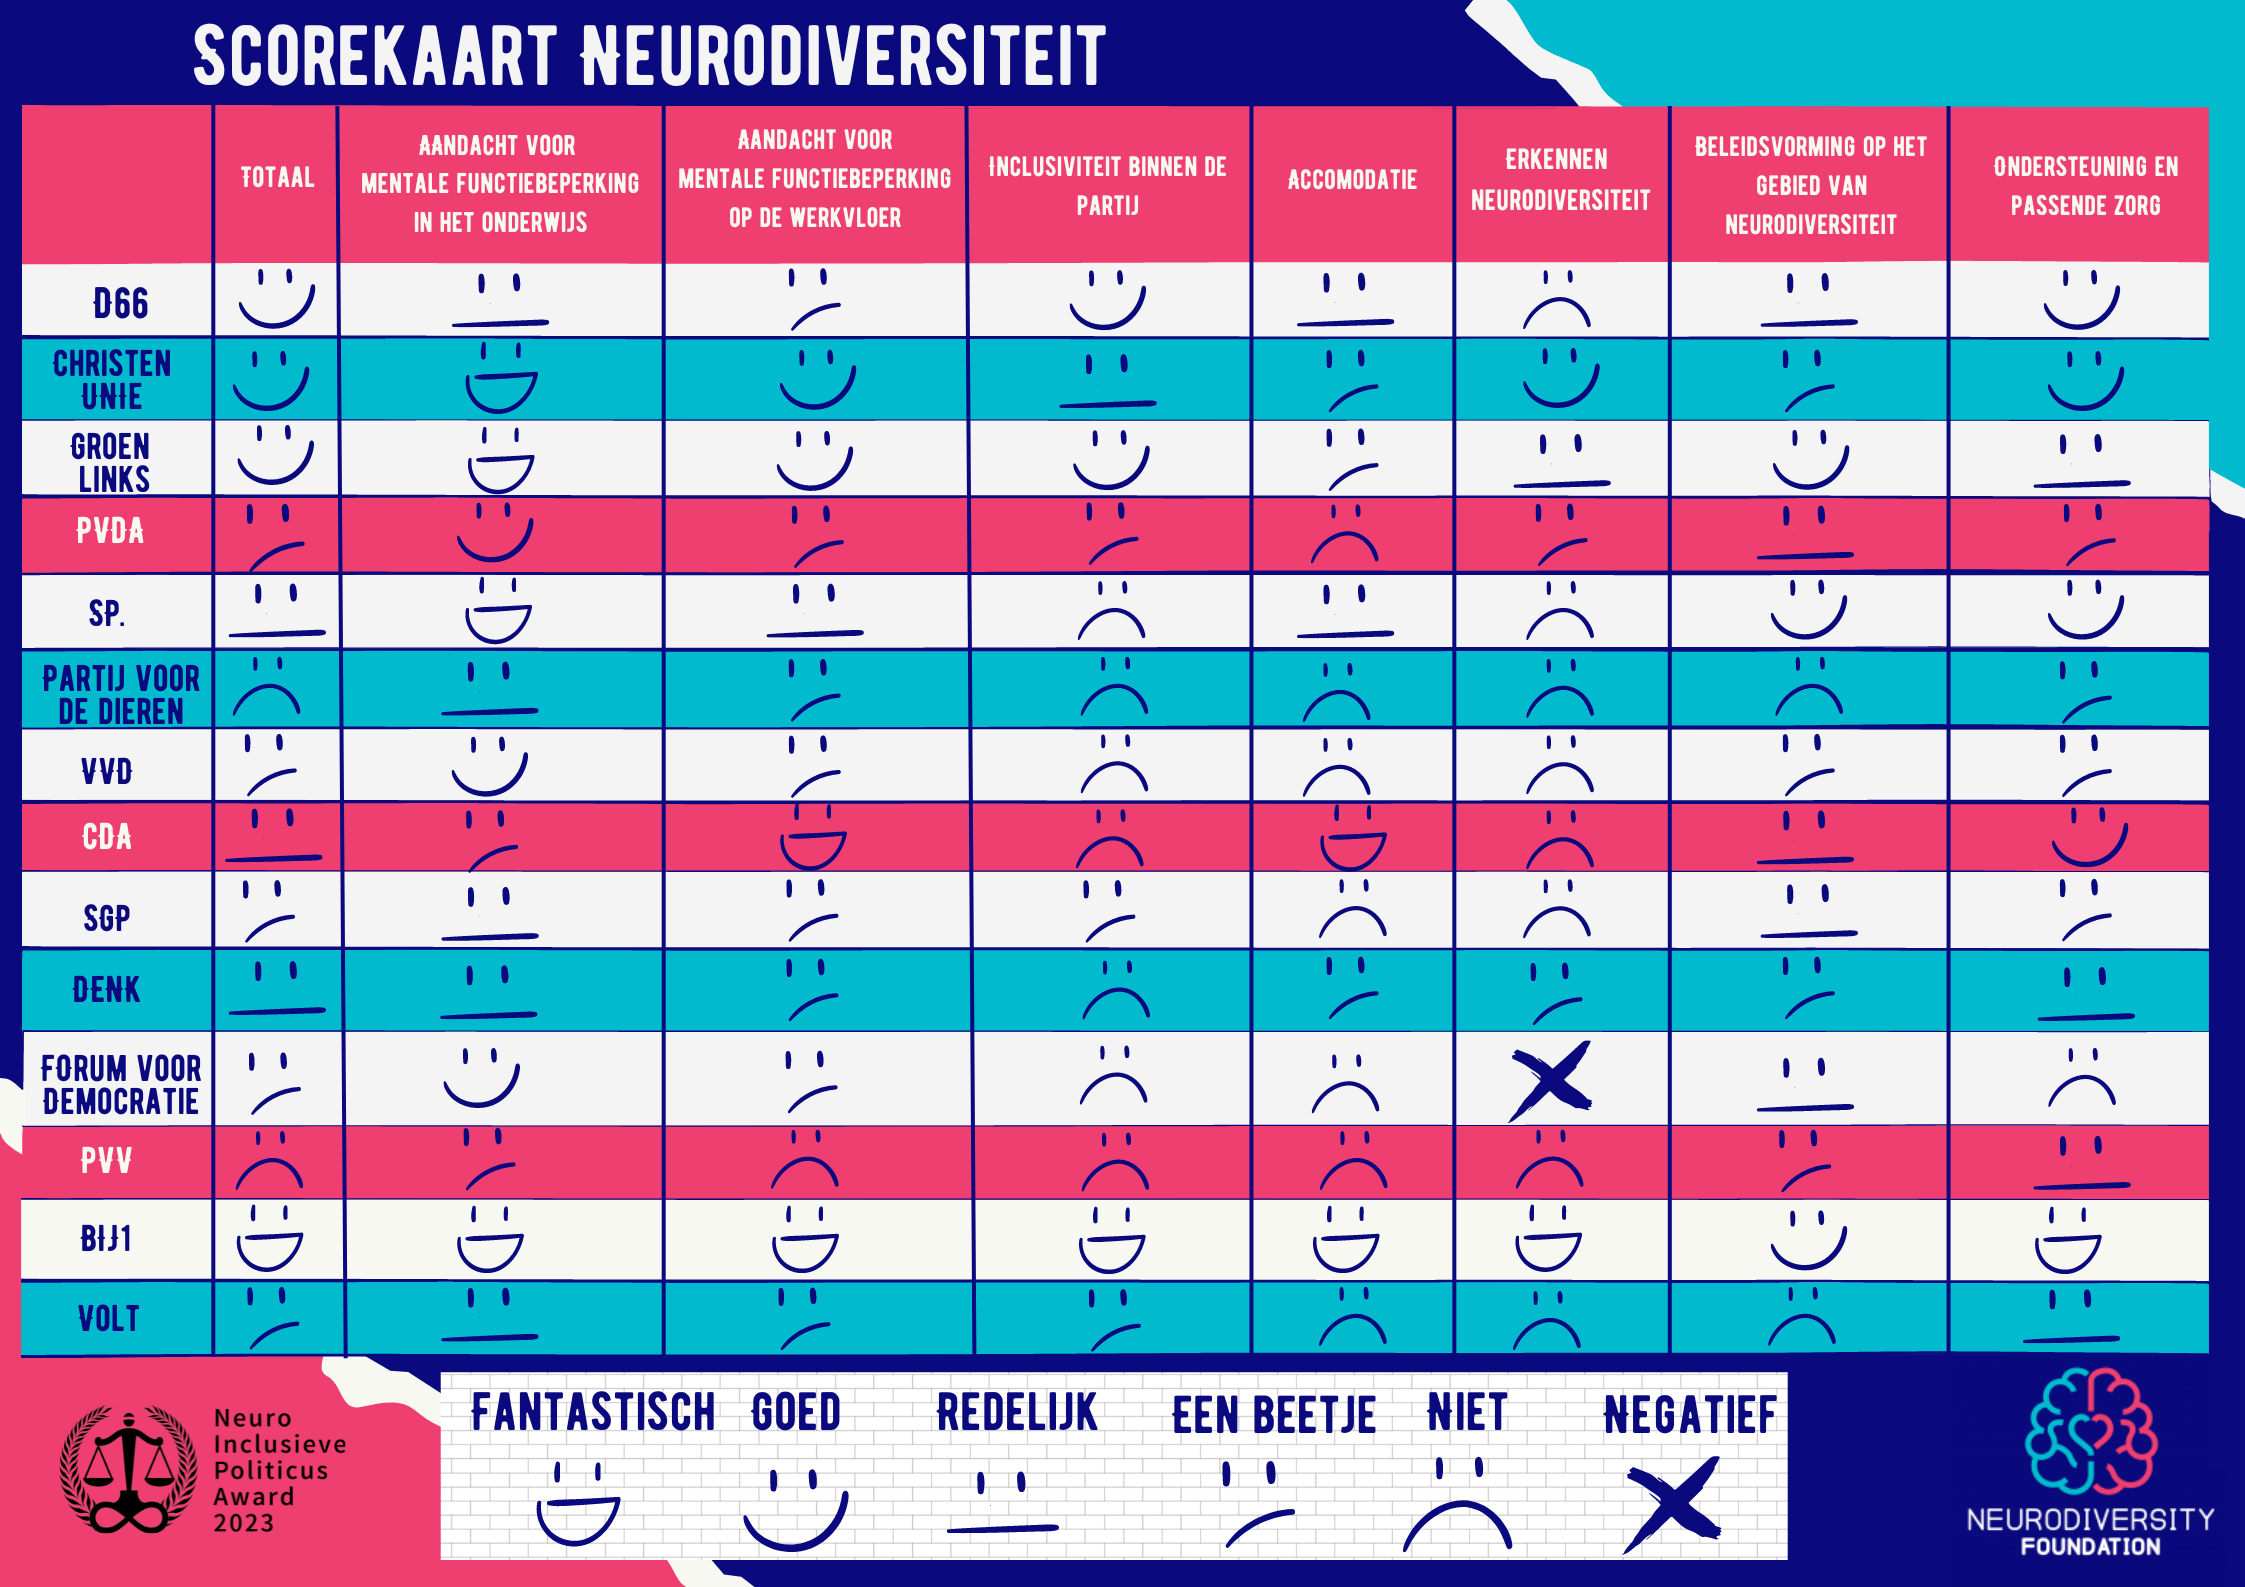 Scorekaart Neurodiversiteit Neurodiversity Foundation